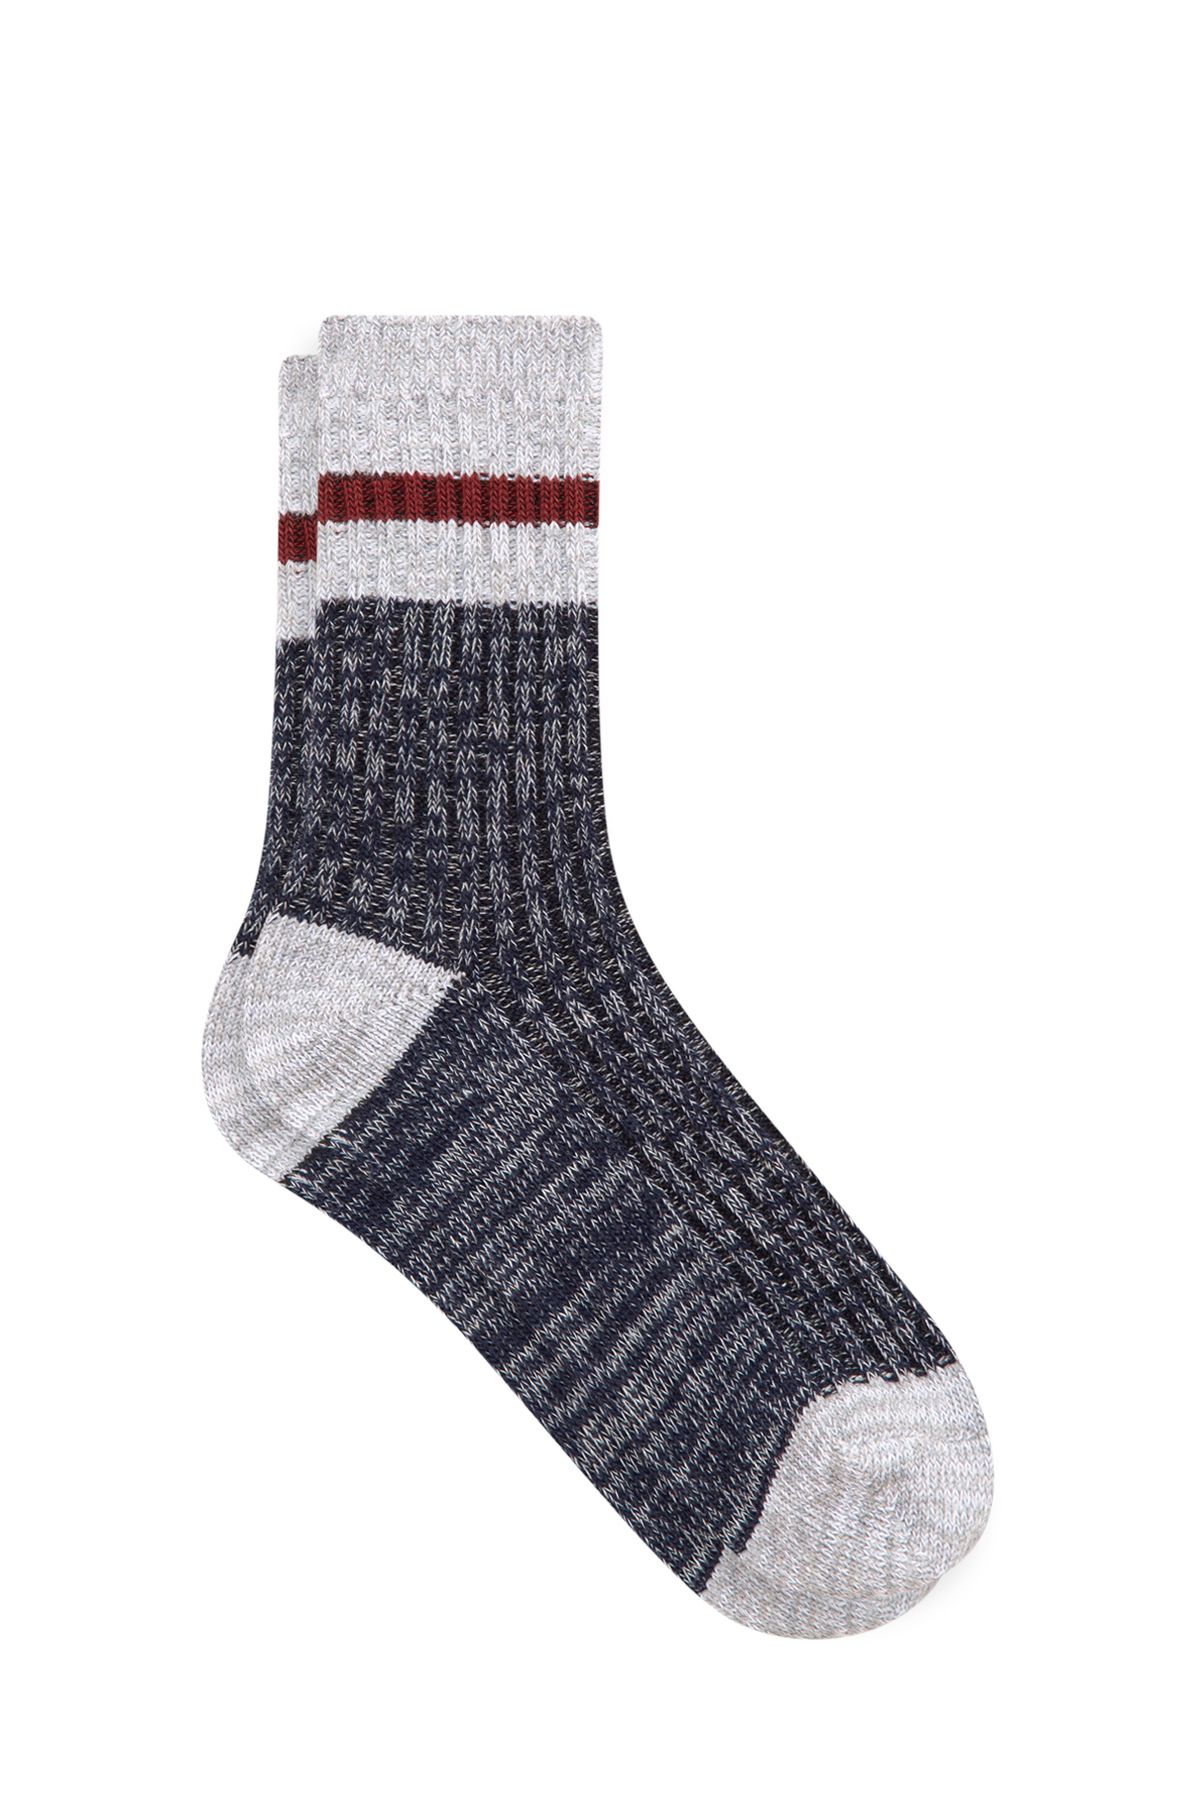 Mavi Lacivert Bot Çorabı 198662-34340